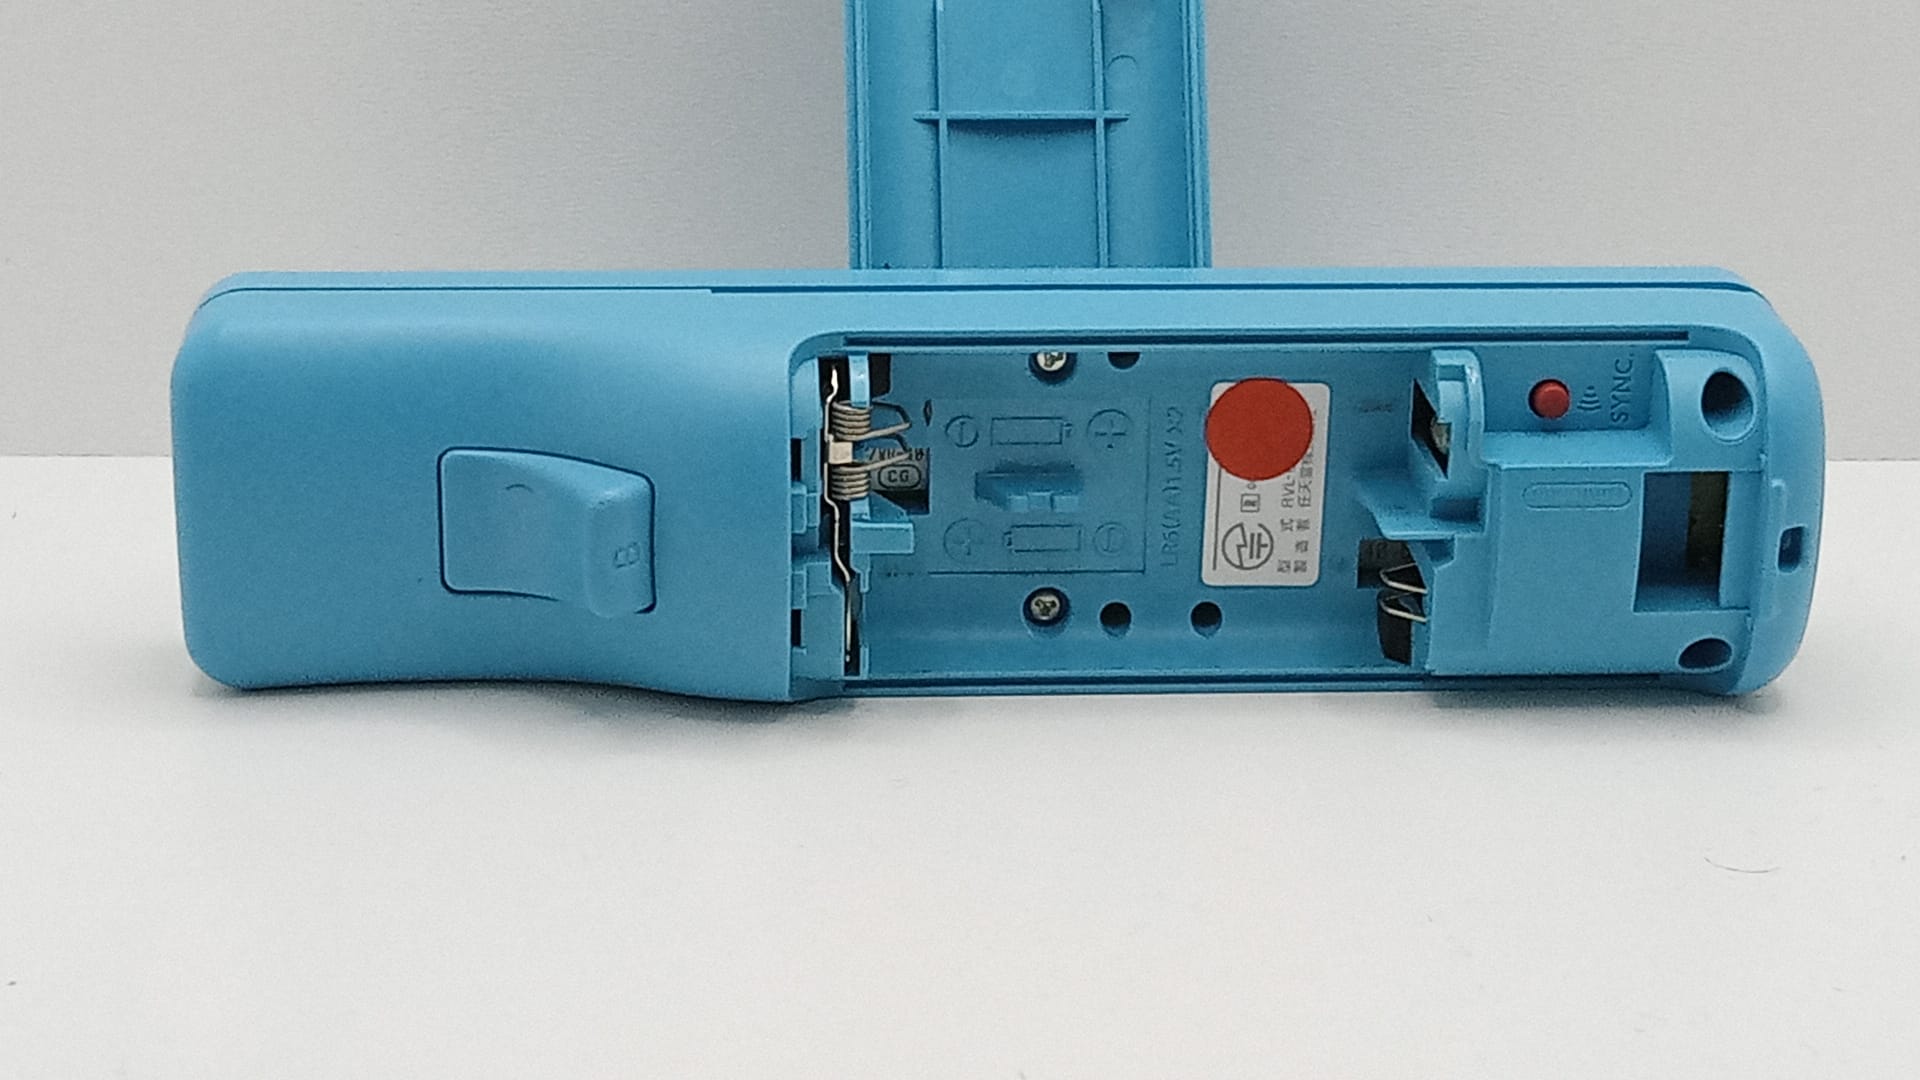 Nintendo Wii Remote - motion plus - Albastru - Original Nintendo - curatat si reconditionat